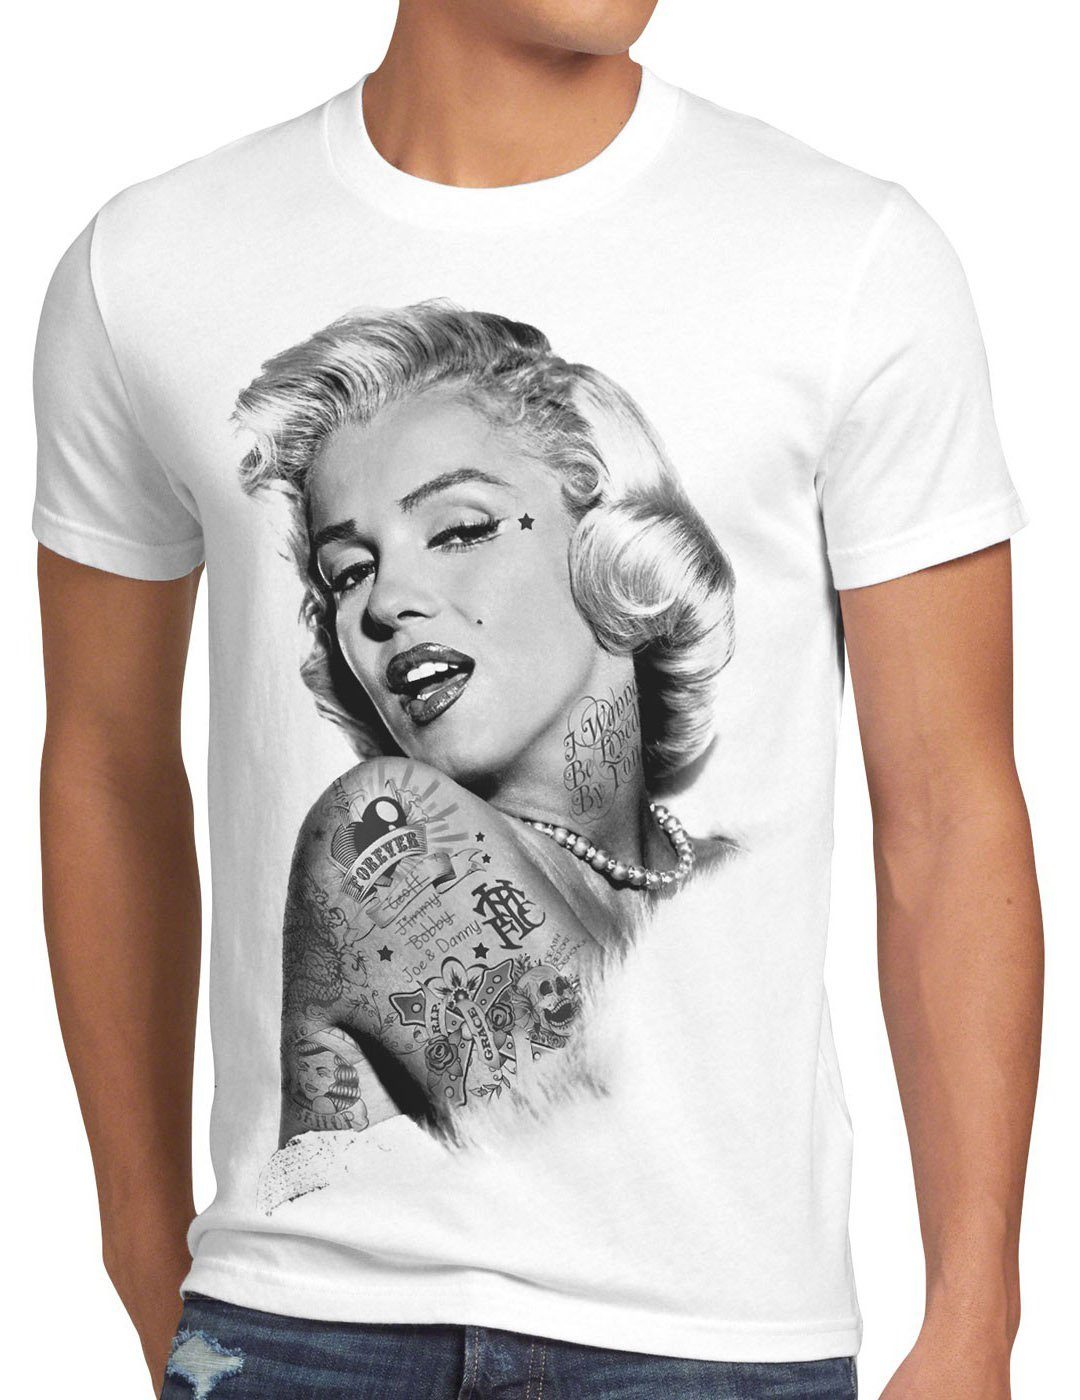 T-Shirt rock Print-Shirt inked style3 Tattoo star punk gun weiß tätowiert Herren marylin monroe Marilyn